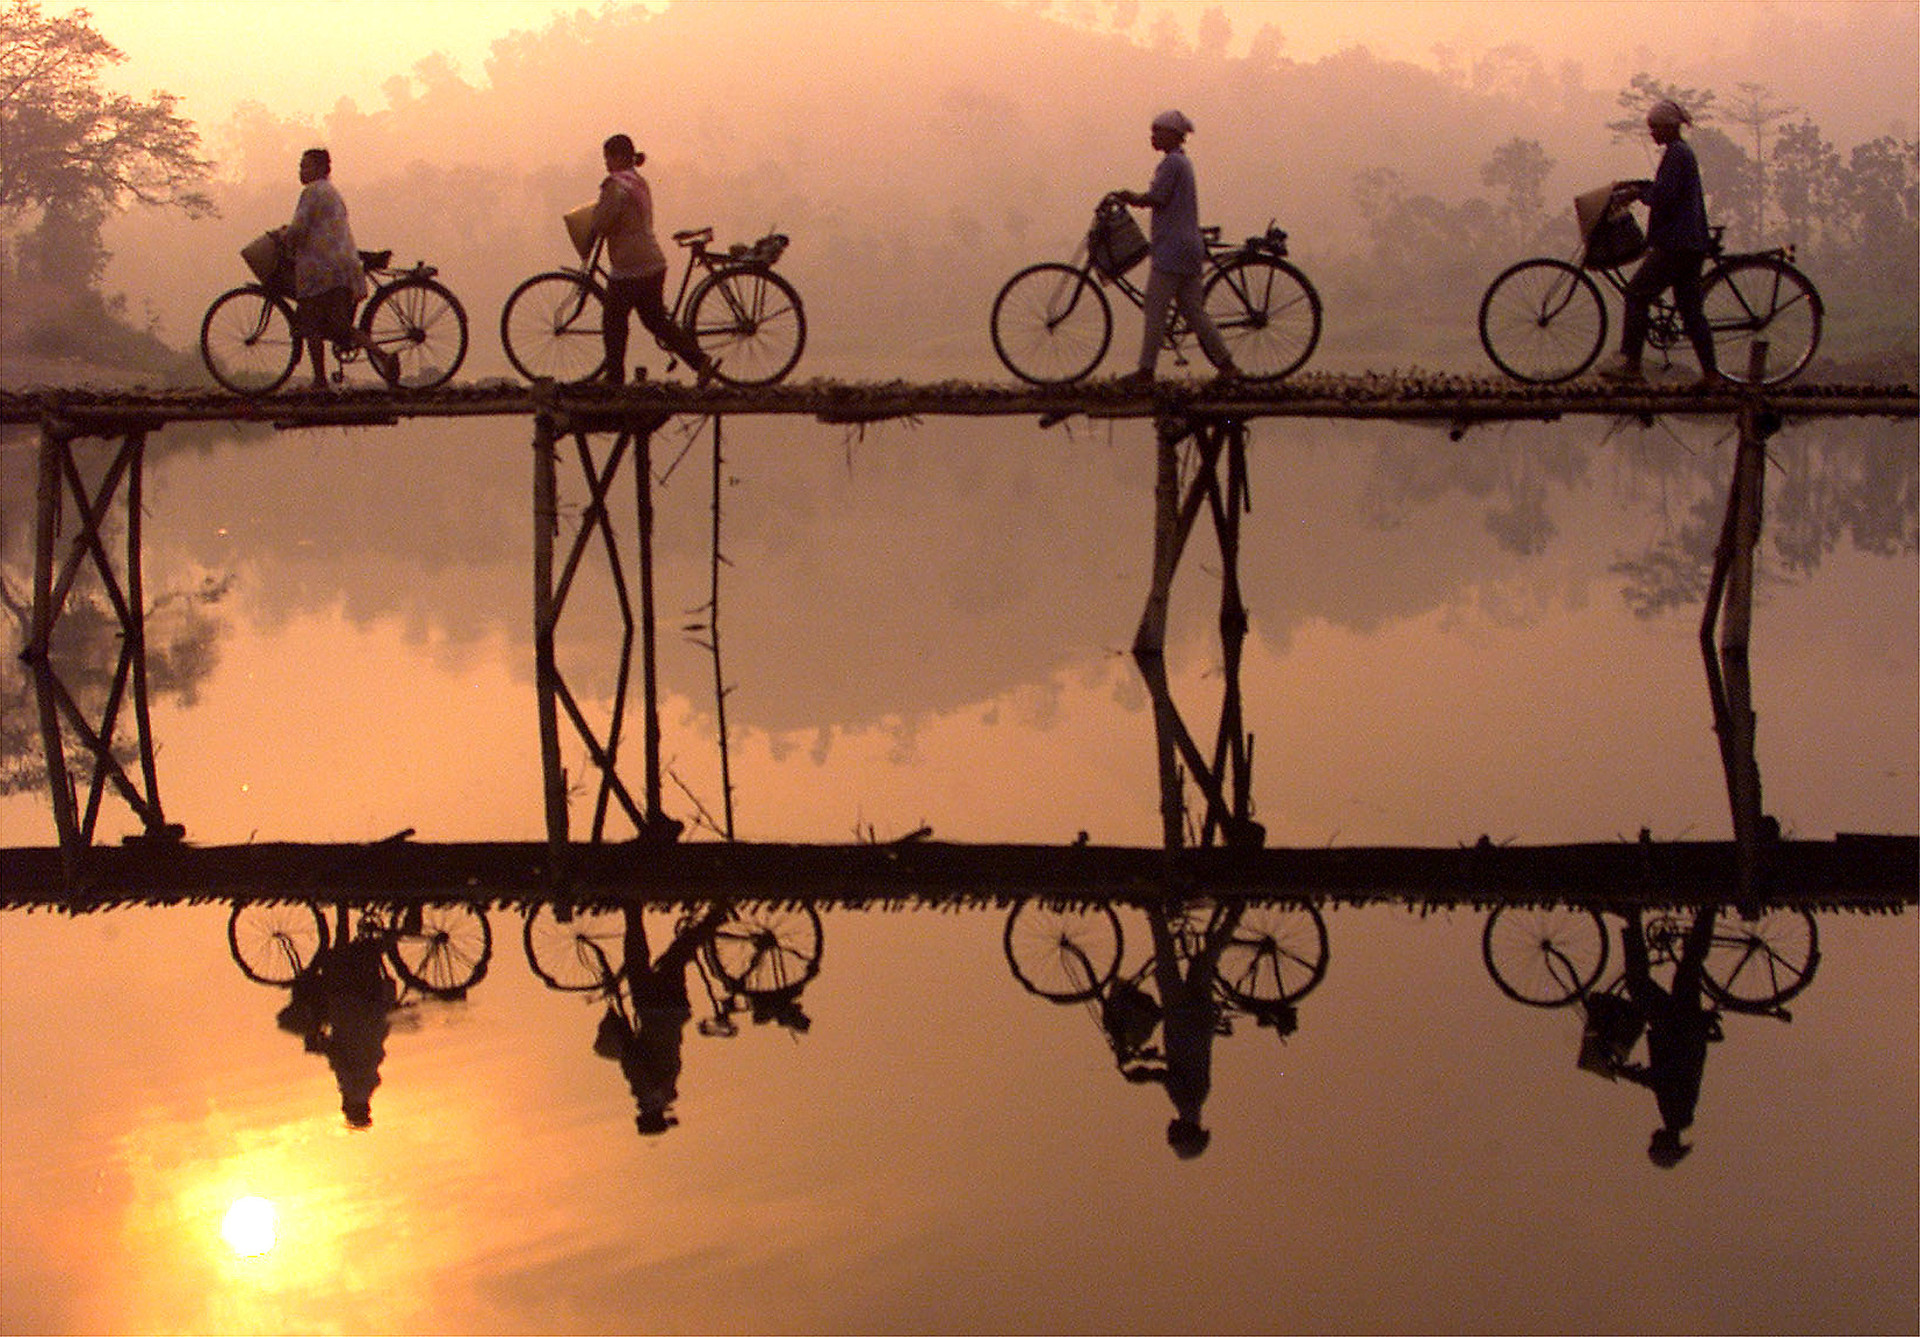 Des villageois traversent un pont de bambou avec leurs vélos alors que le soleil se lève derrière eux, non loin de la ville de Yogyakarta, dans le centre de Java.